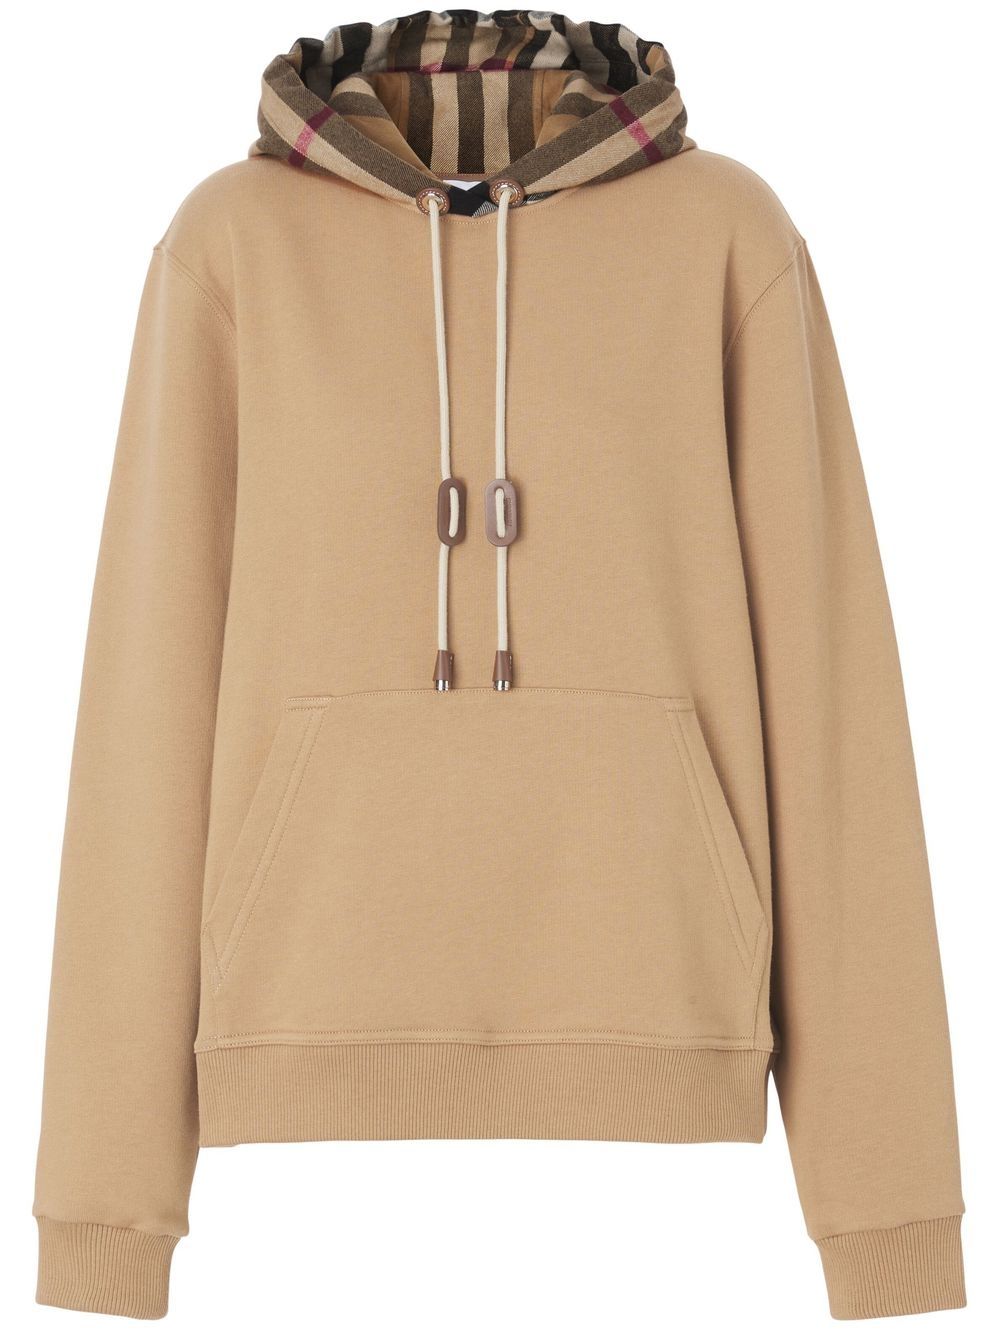 Burberry oversized checked hoodie - Neutrals von Burberry